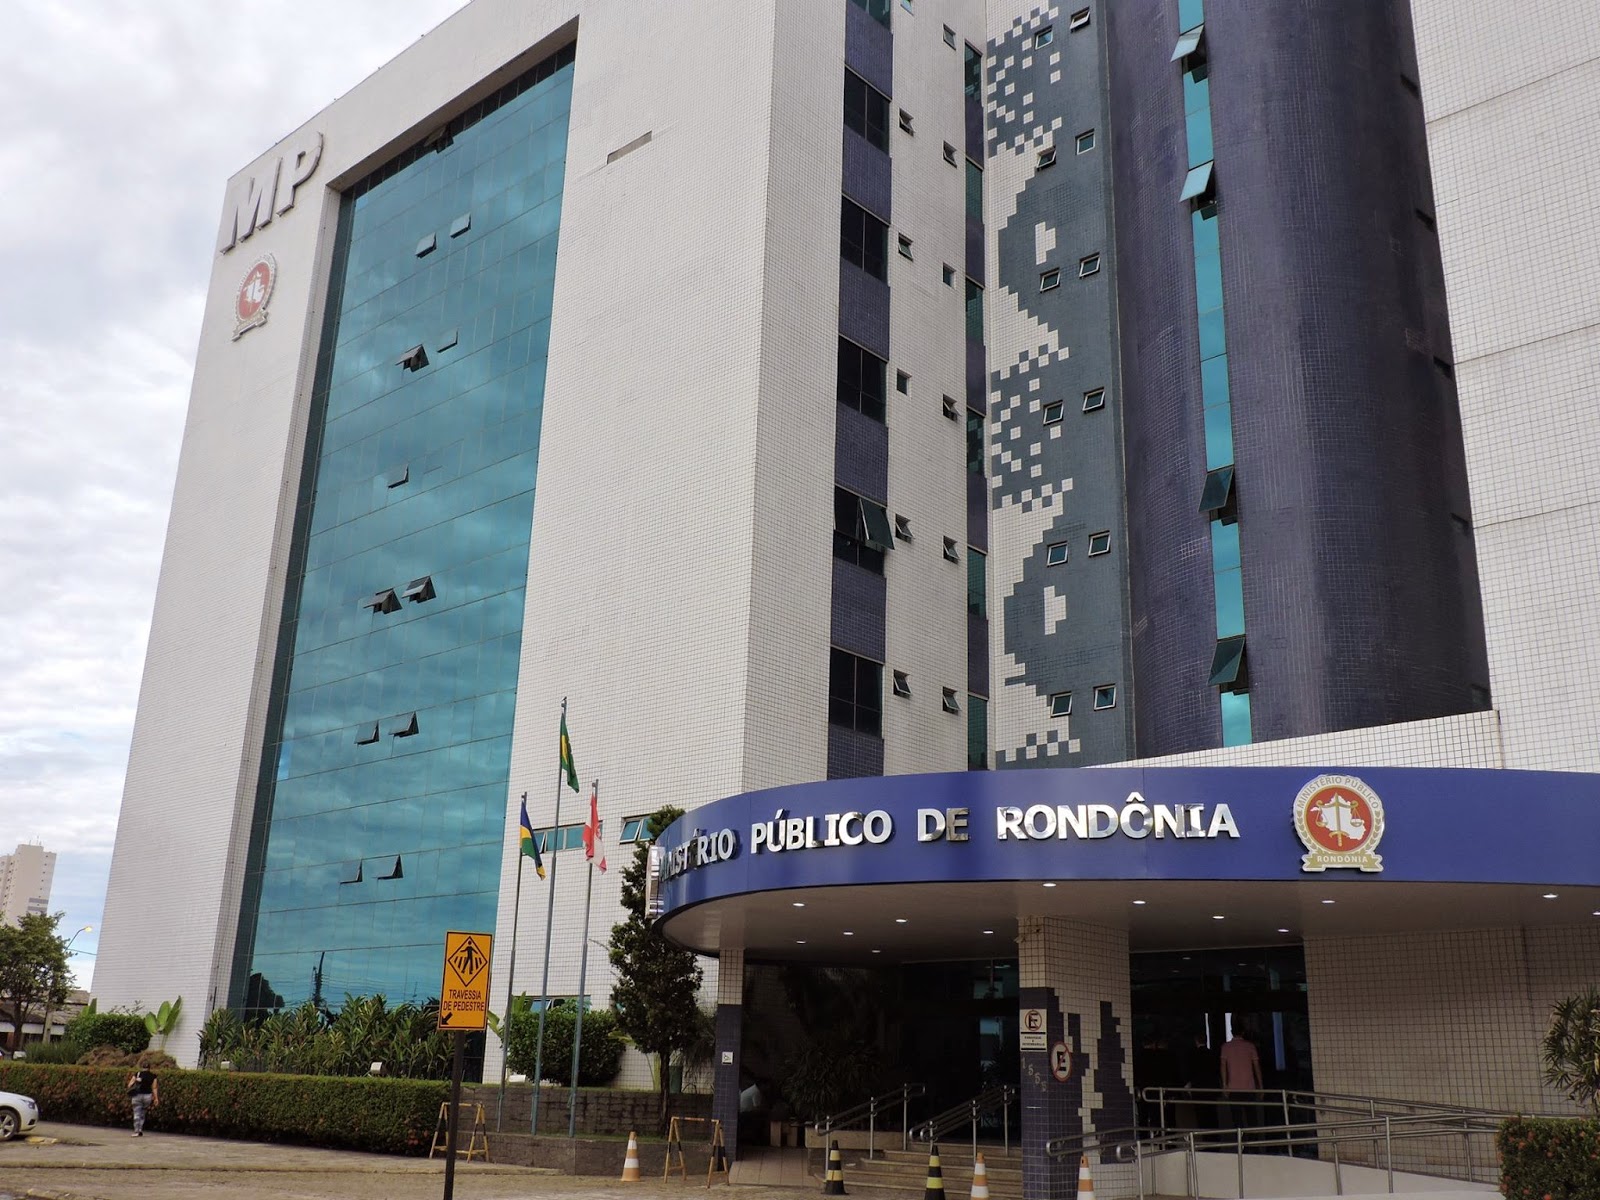 Ministério Público de Rondônia realiza mais de 4 mil atendimentos ao público por meio da Ouvidoria - News Rondônia